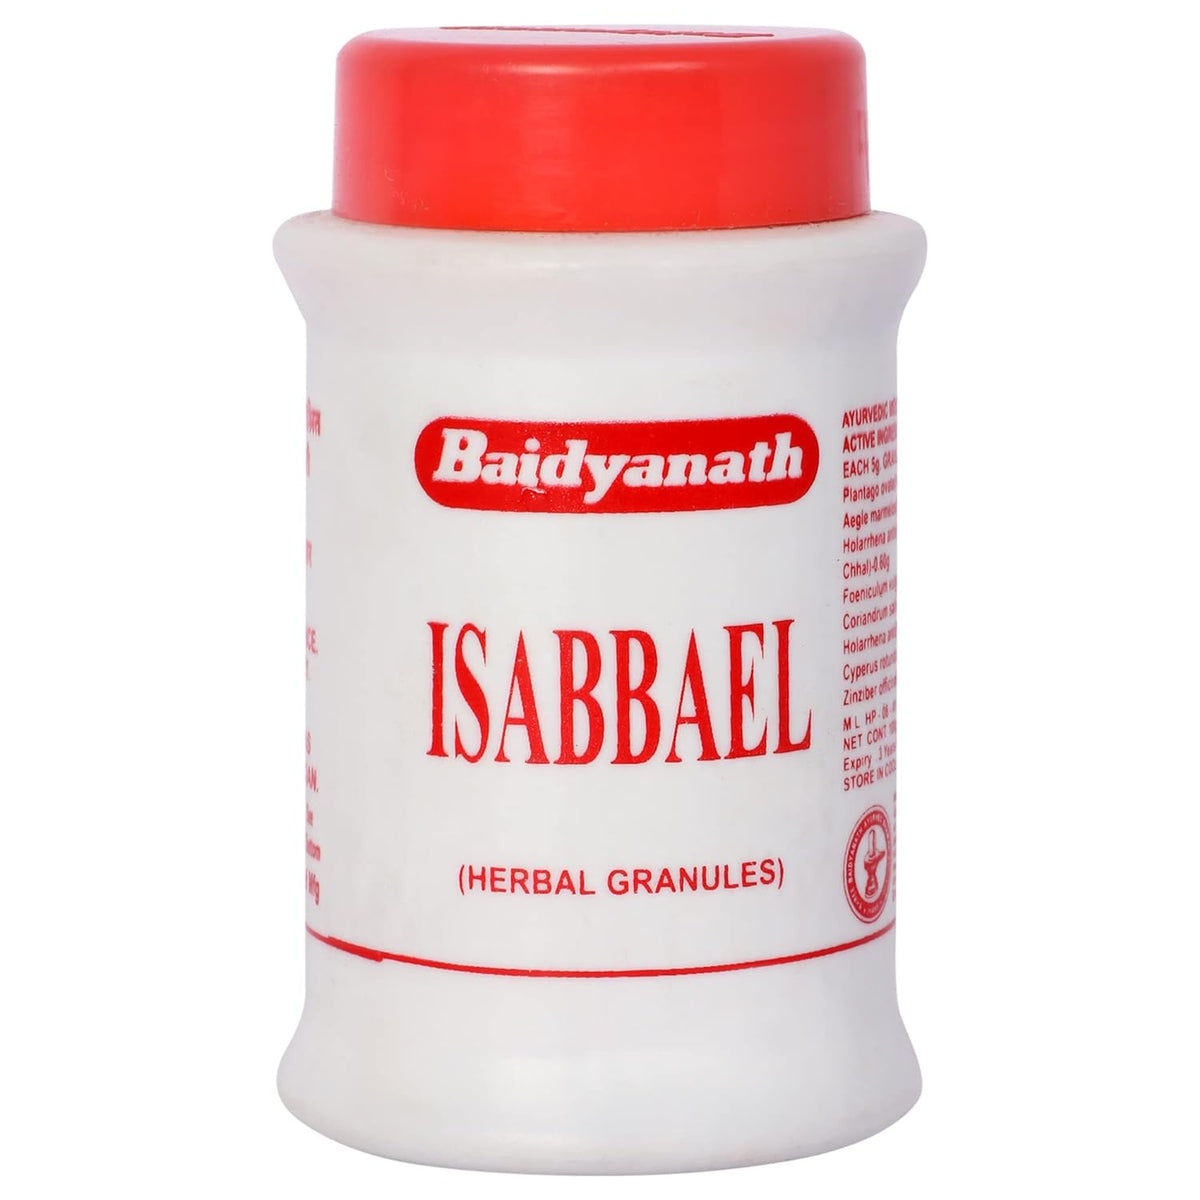 Baidyanath Ayurvedic (Jhansi) Isabbael Herbal Granules Powder